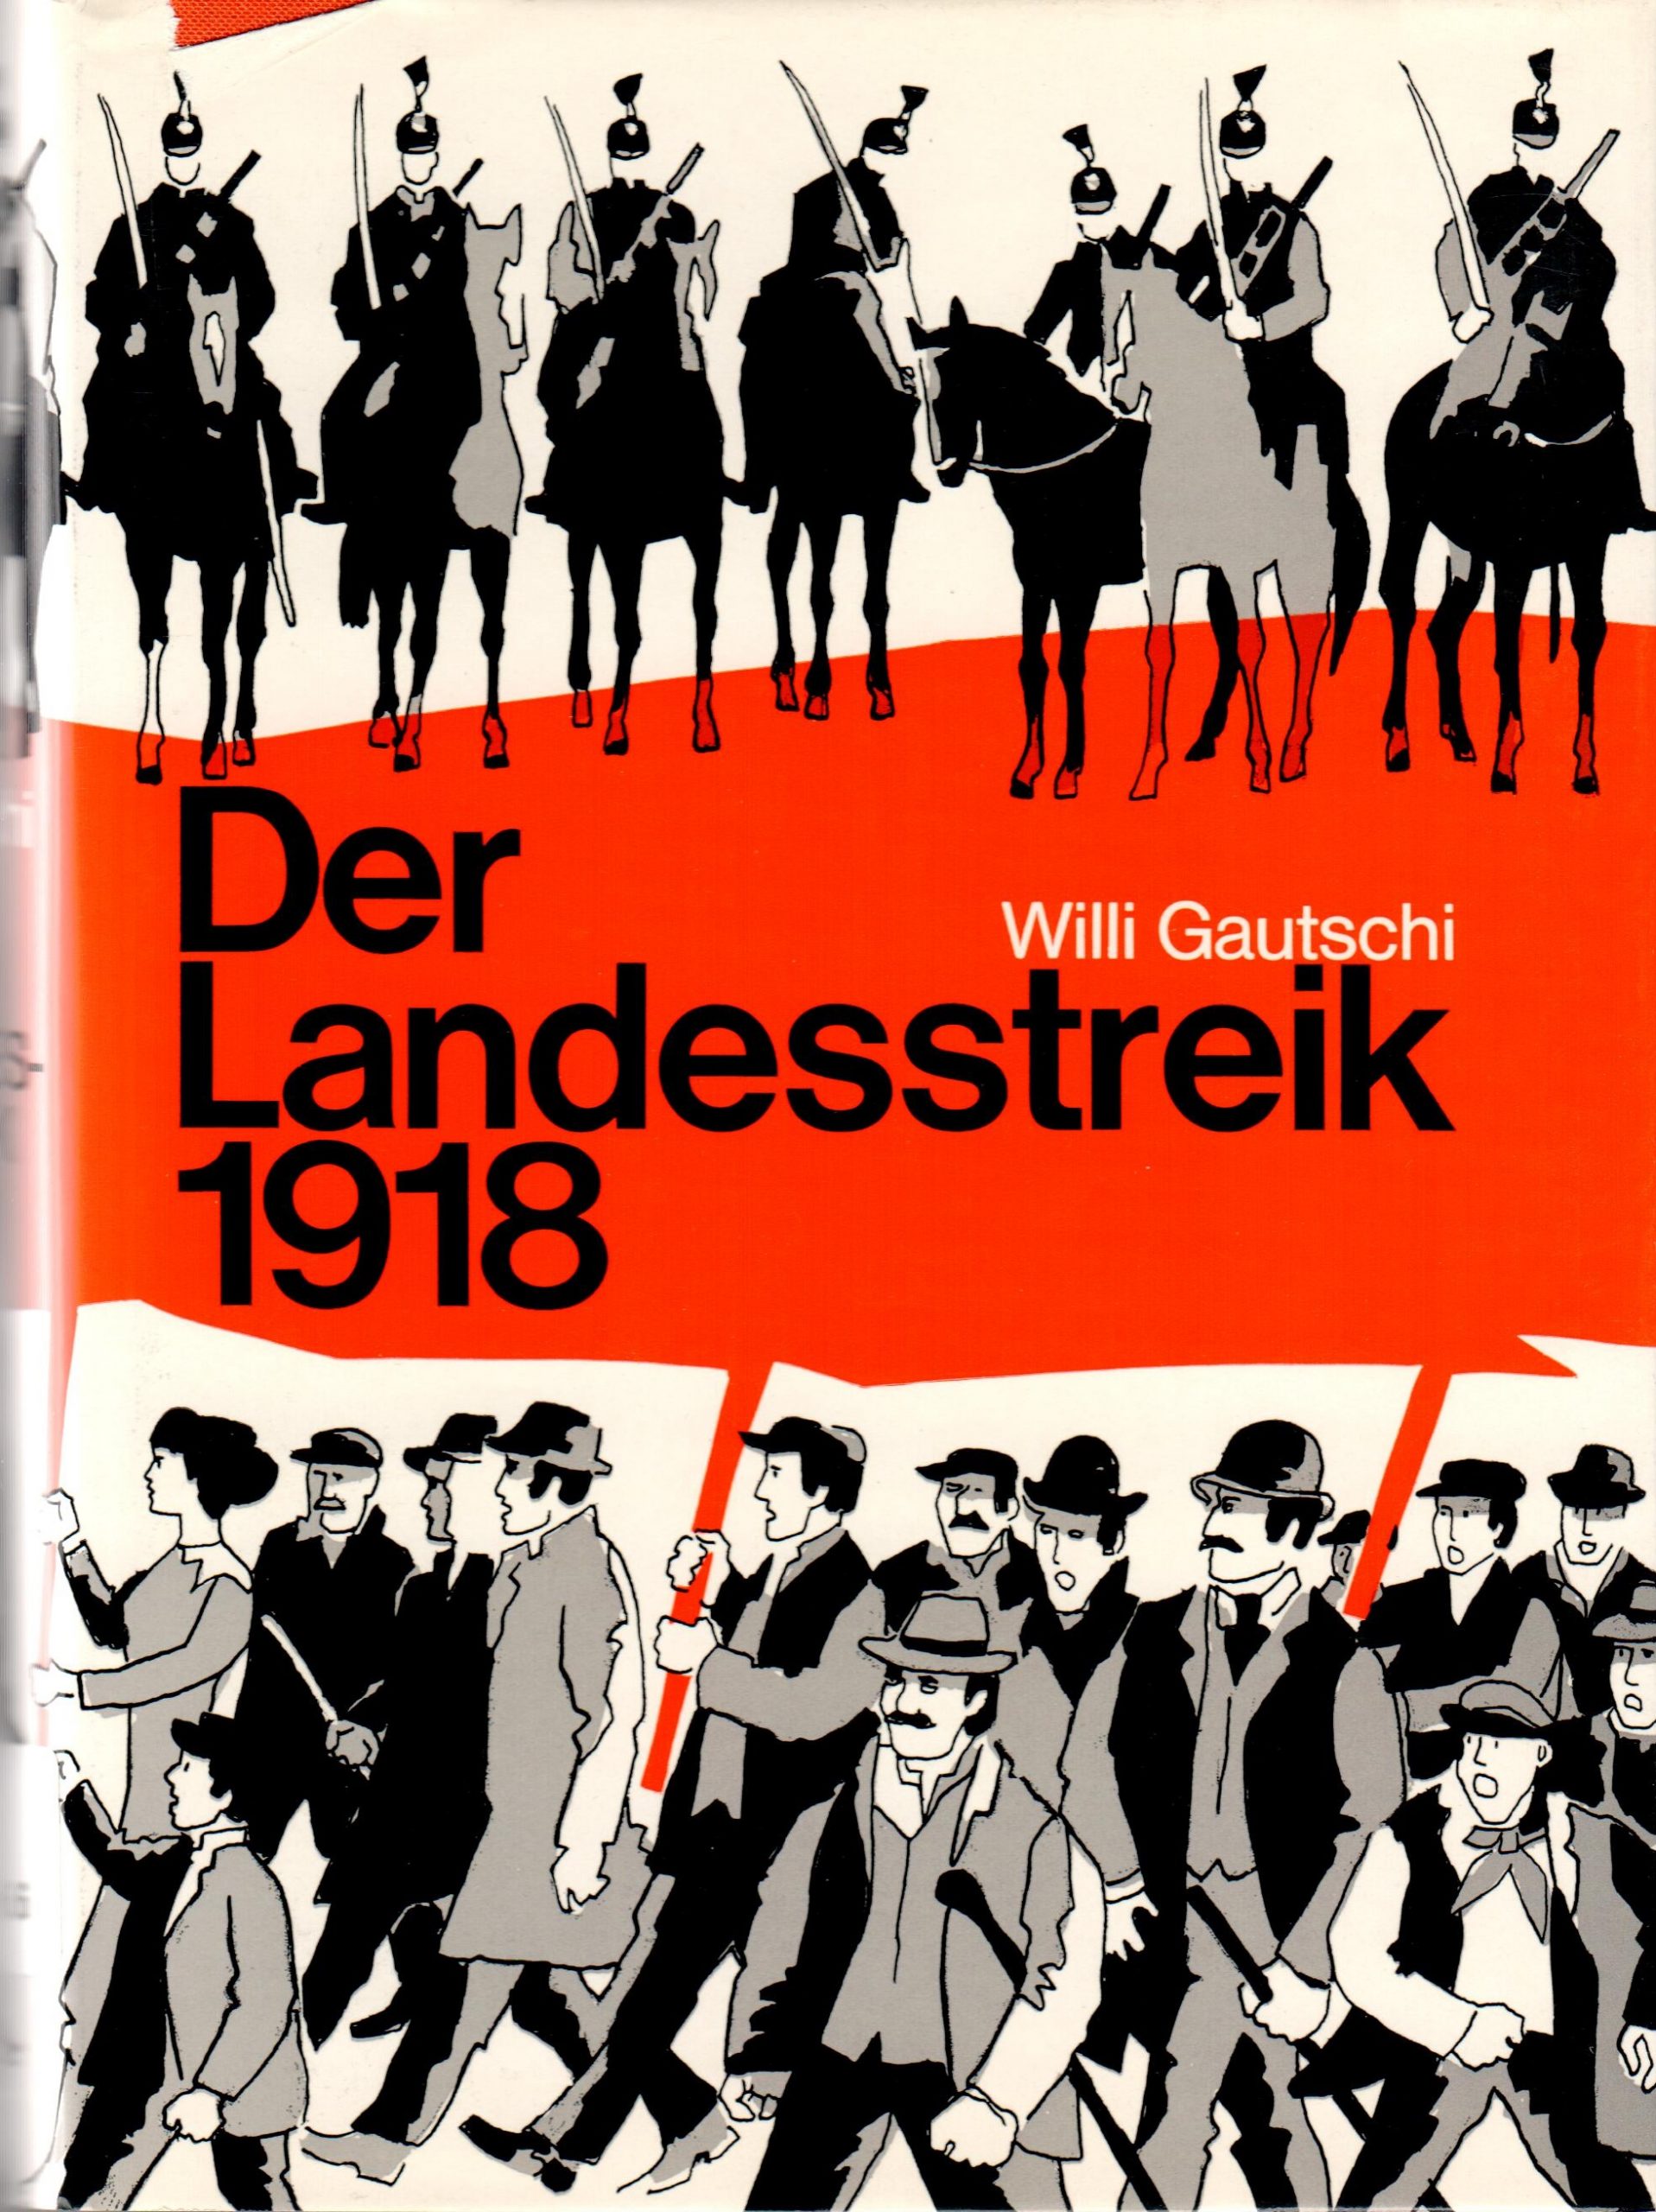 Willi Gautschi, Der Landesstreik, Benziger Verlag, 1968